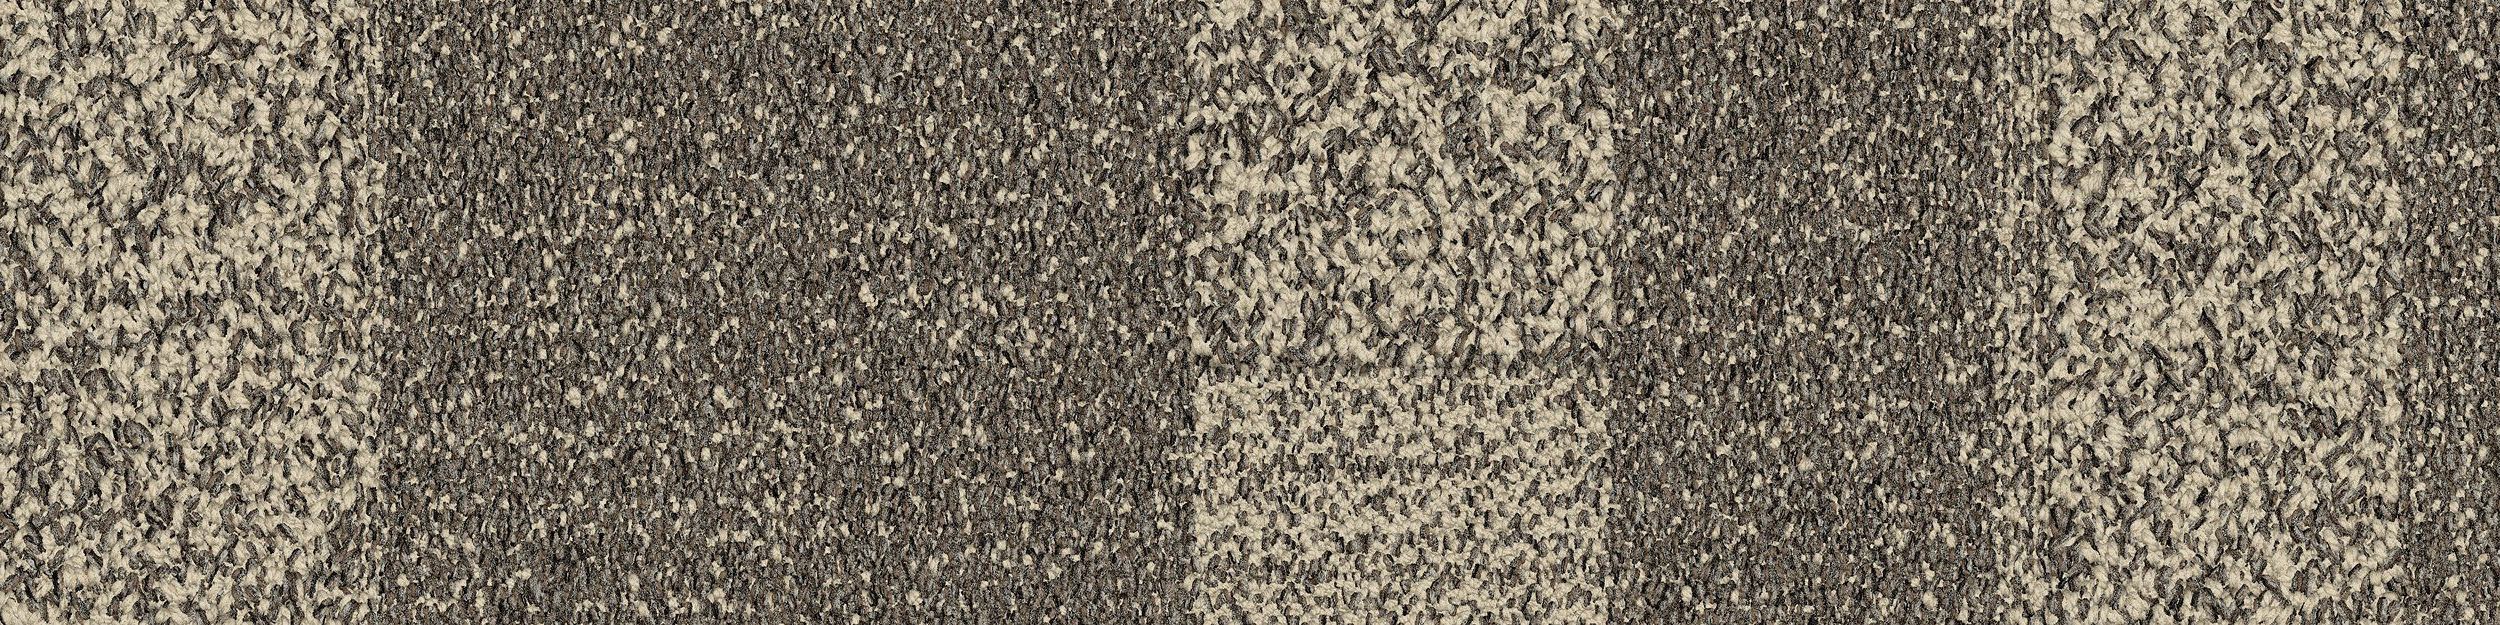 Future Woven Carpet Tile In Fieldstone imagen número 2